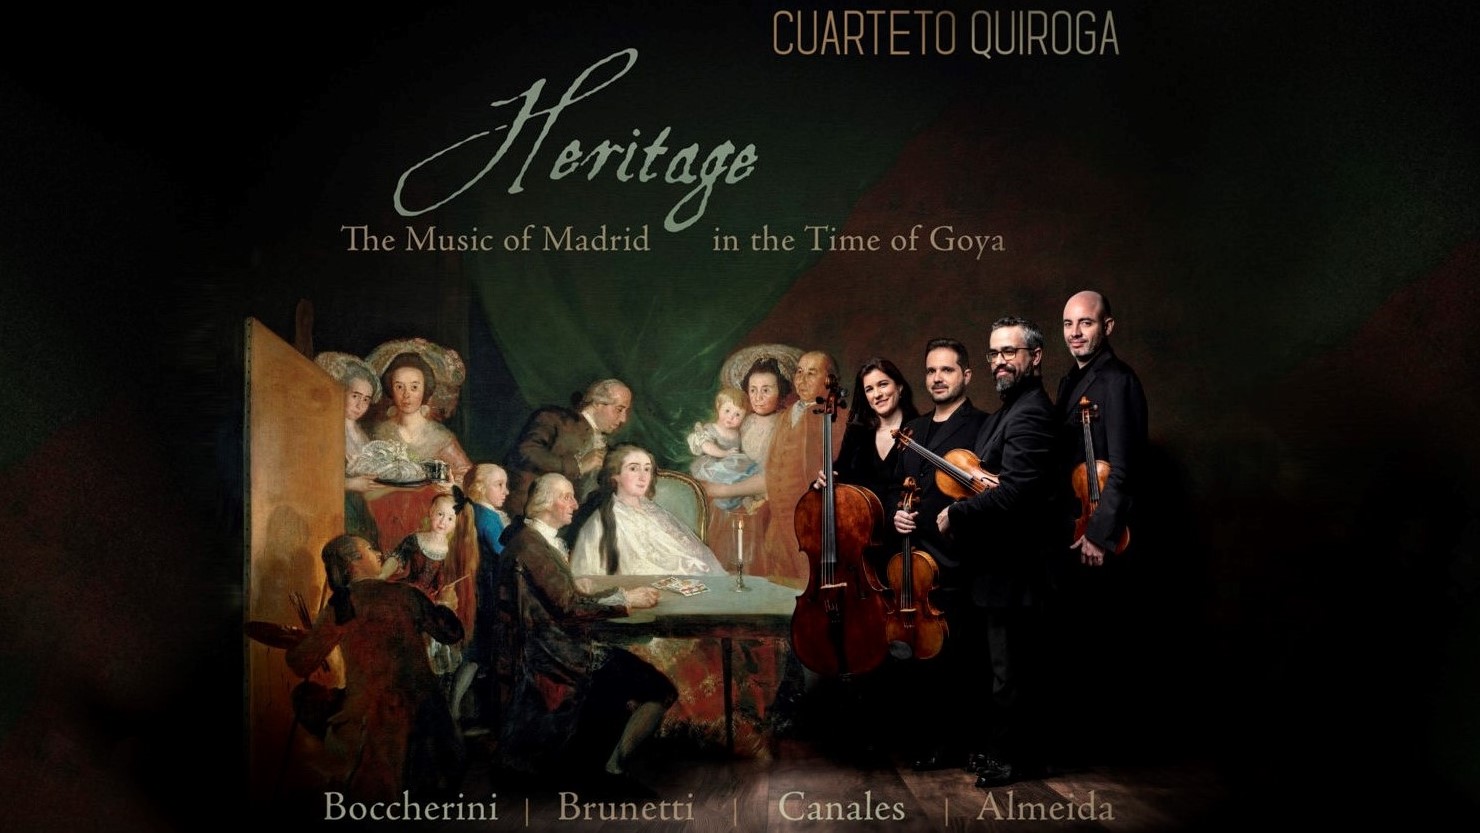 Cuarteto Quiroga Heritage